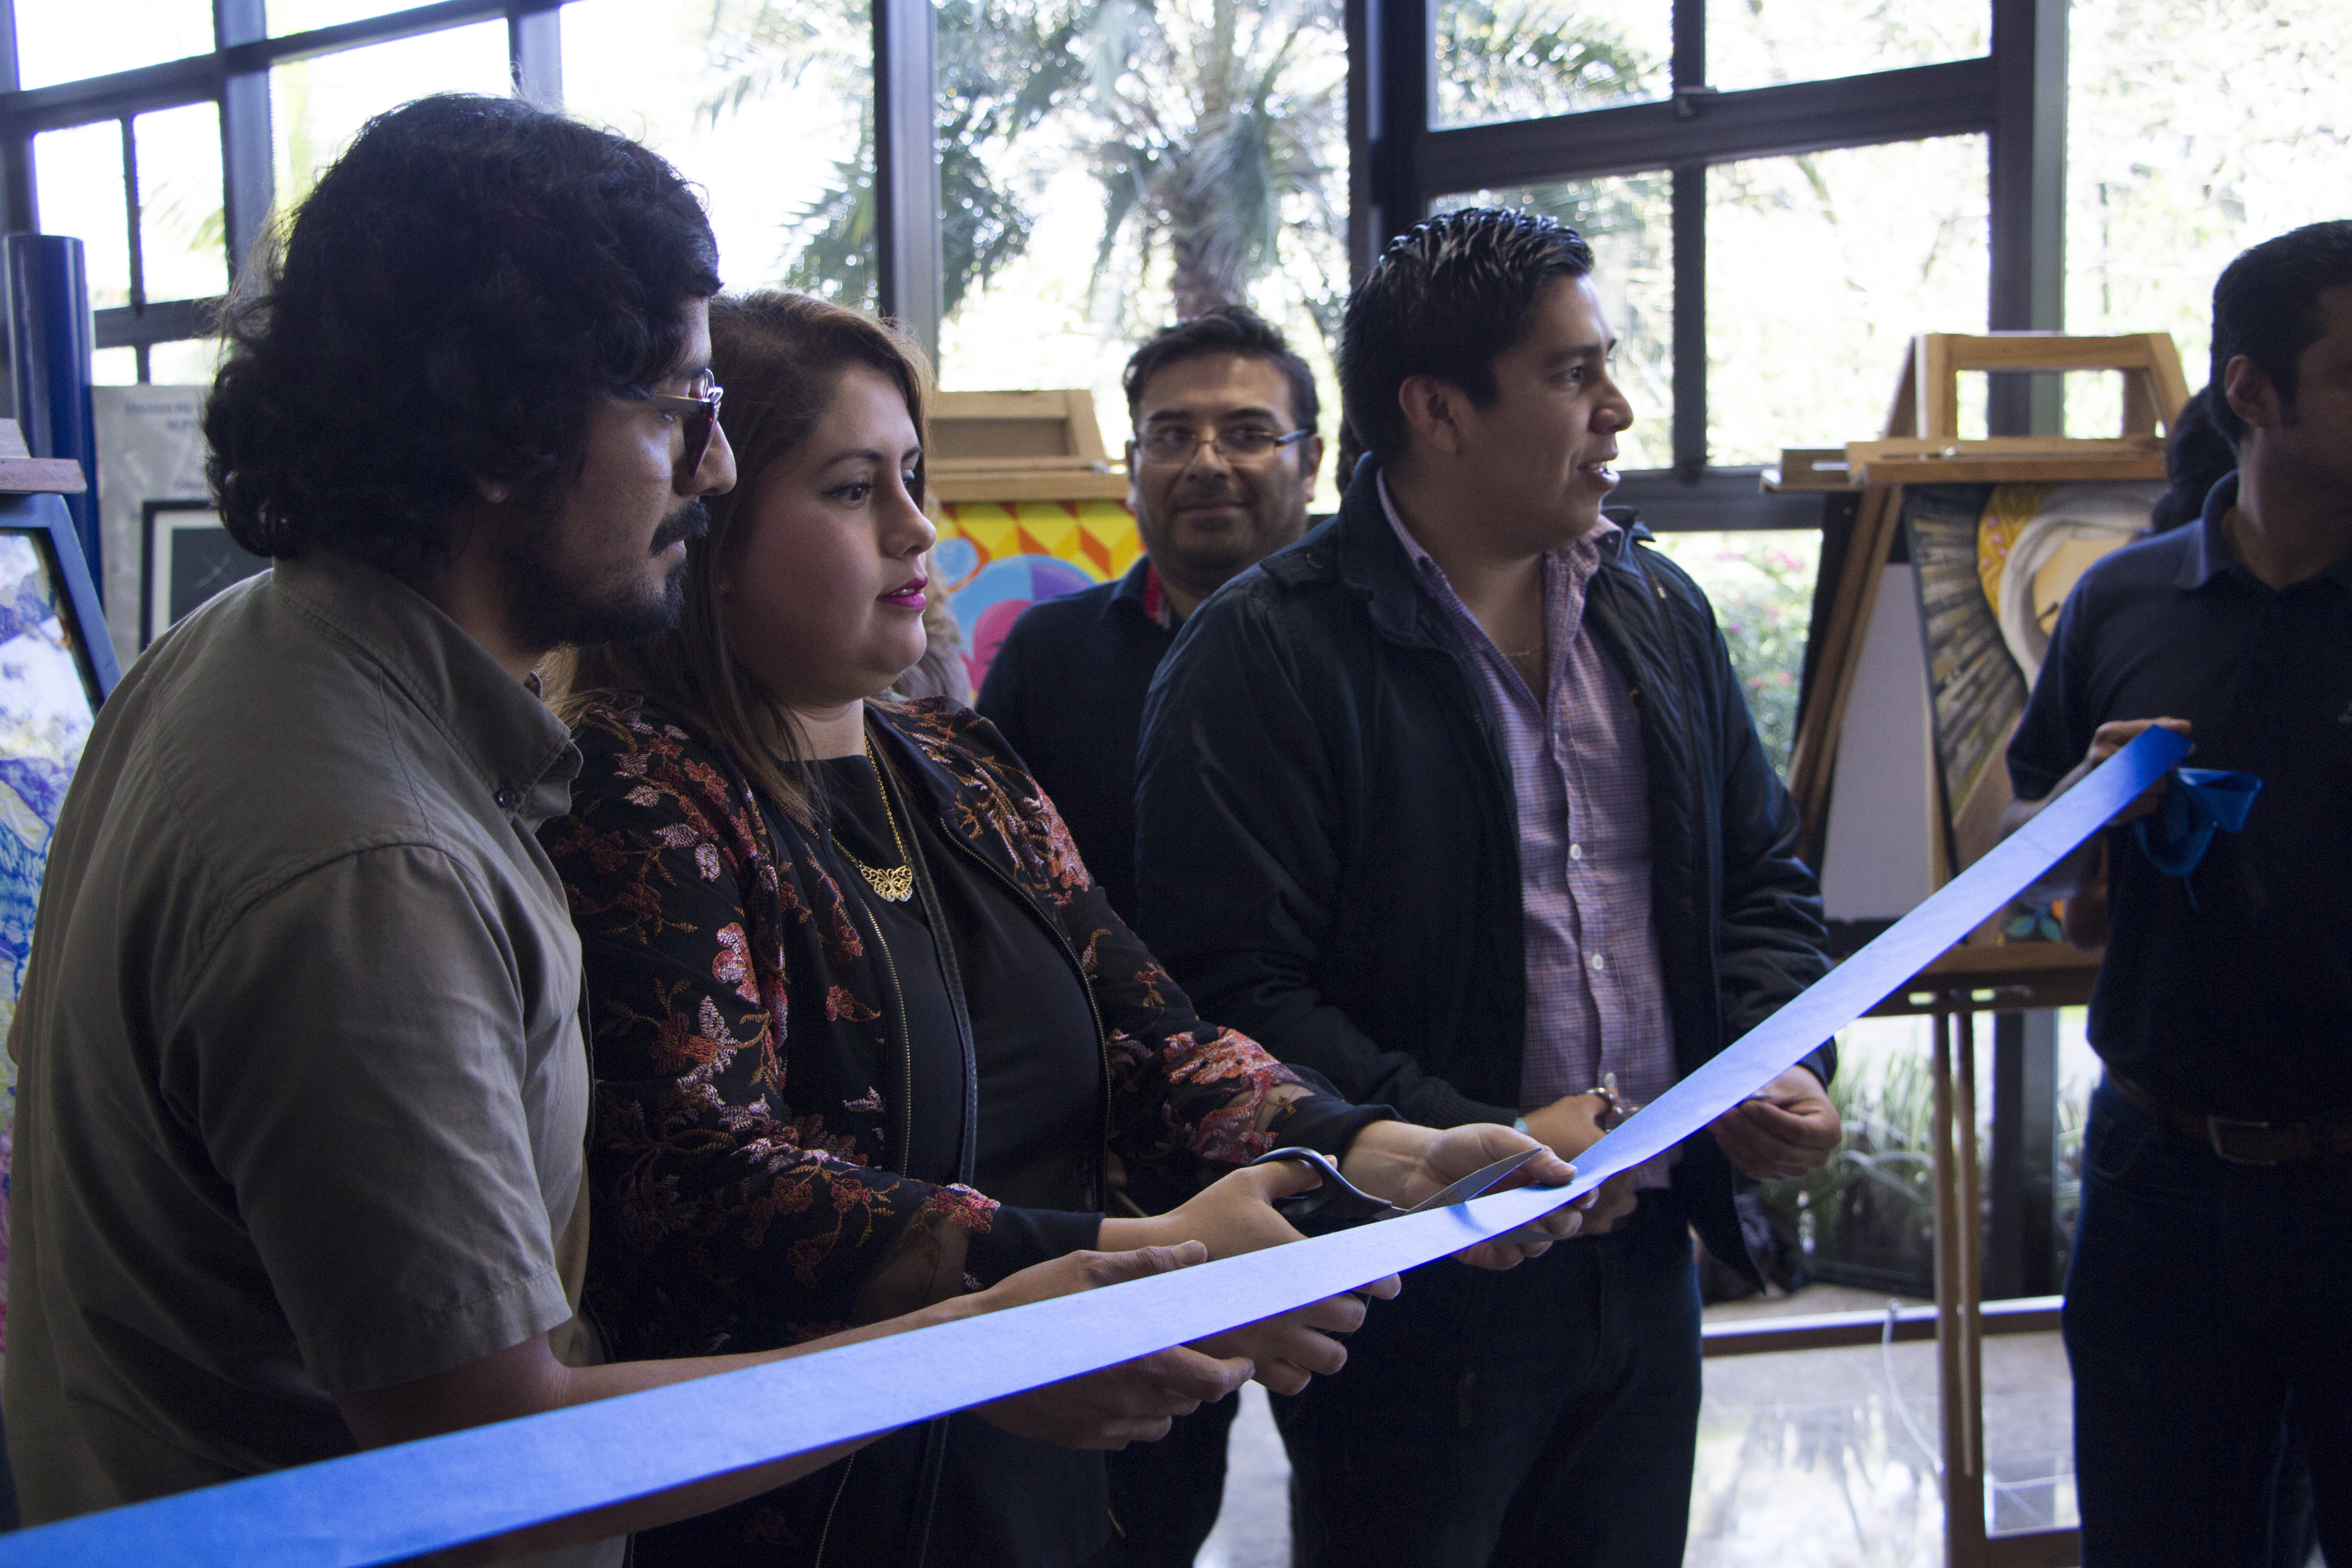 La biblioteca del Tecnológico de Monterrey en Veracruz se transforma en un recinto lleno de magia y color con la exposición pictórica de "VERARTE".